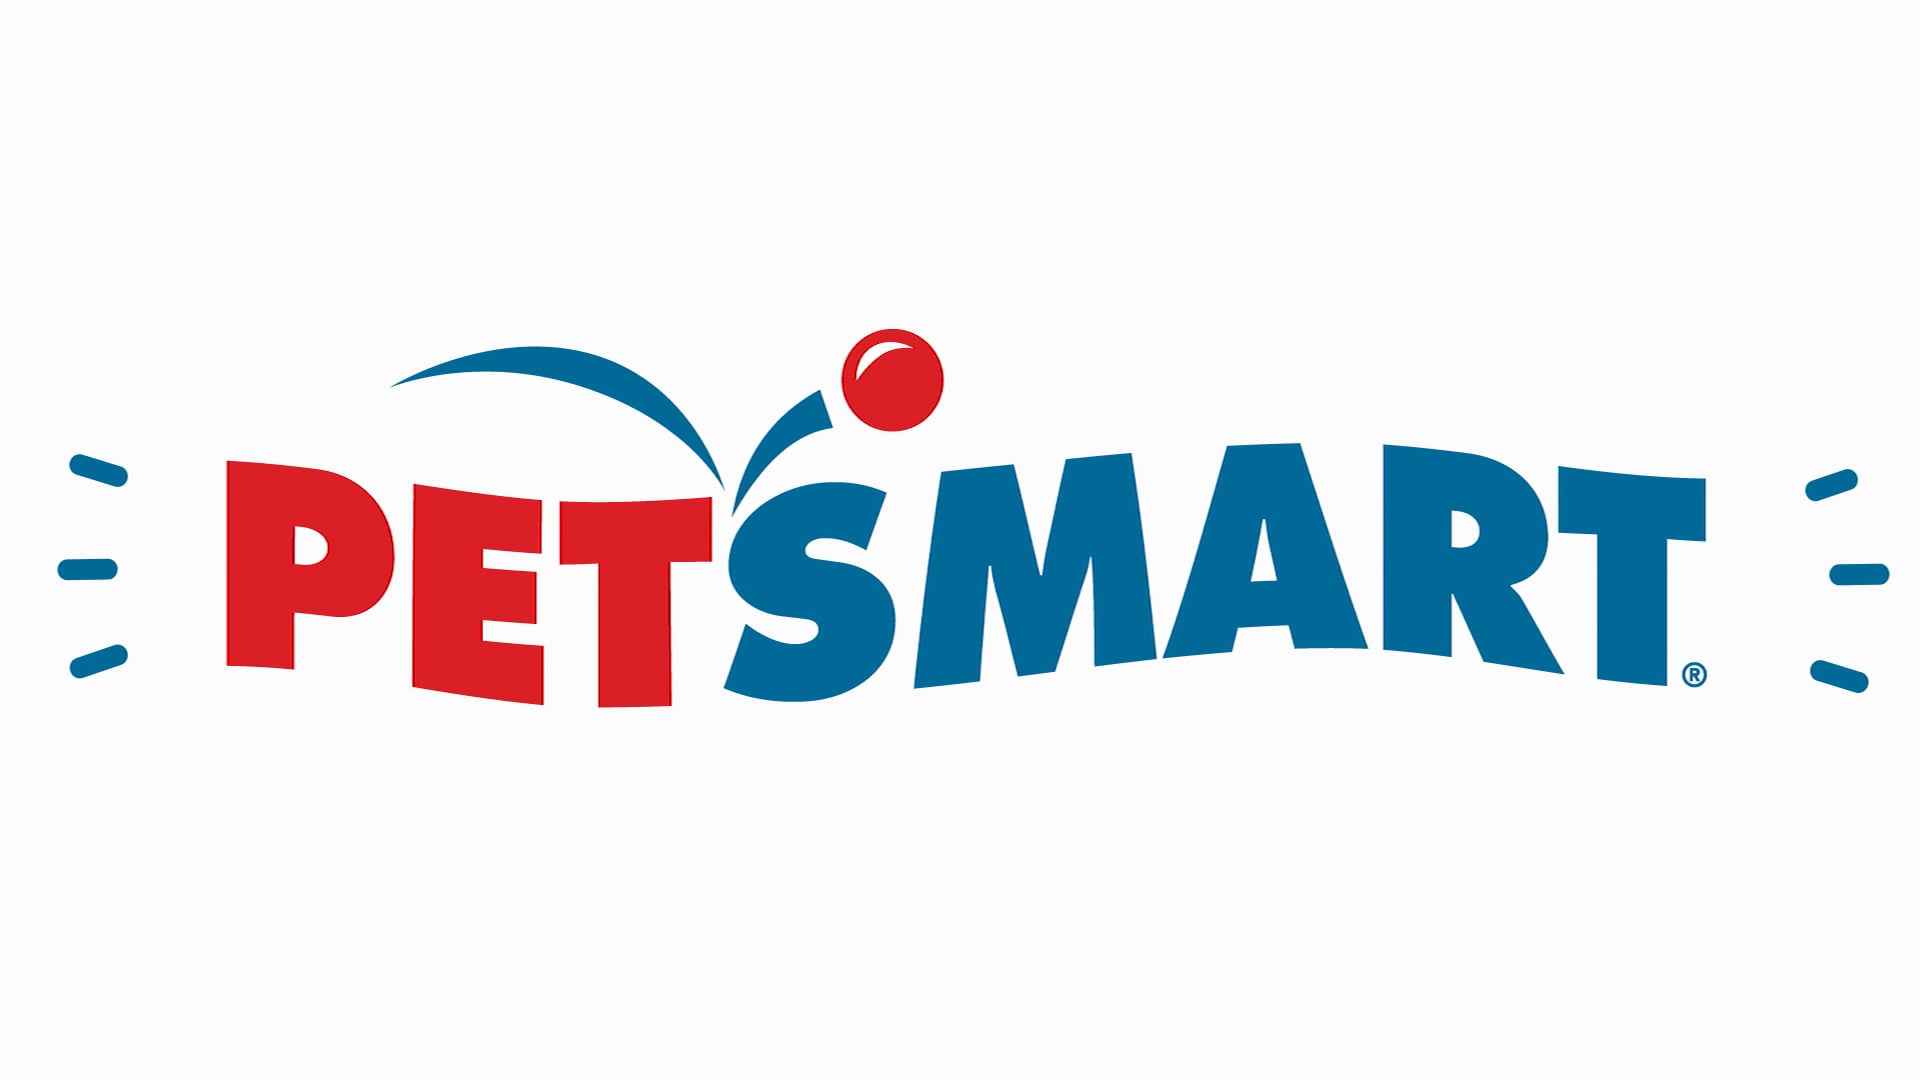 PETSMART Logo Animation on Vimeo